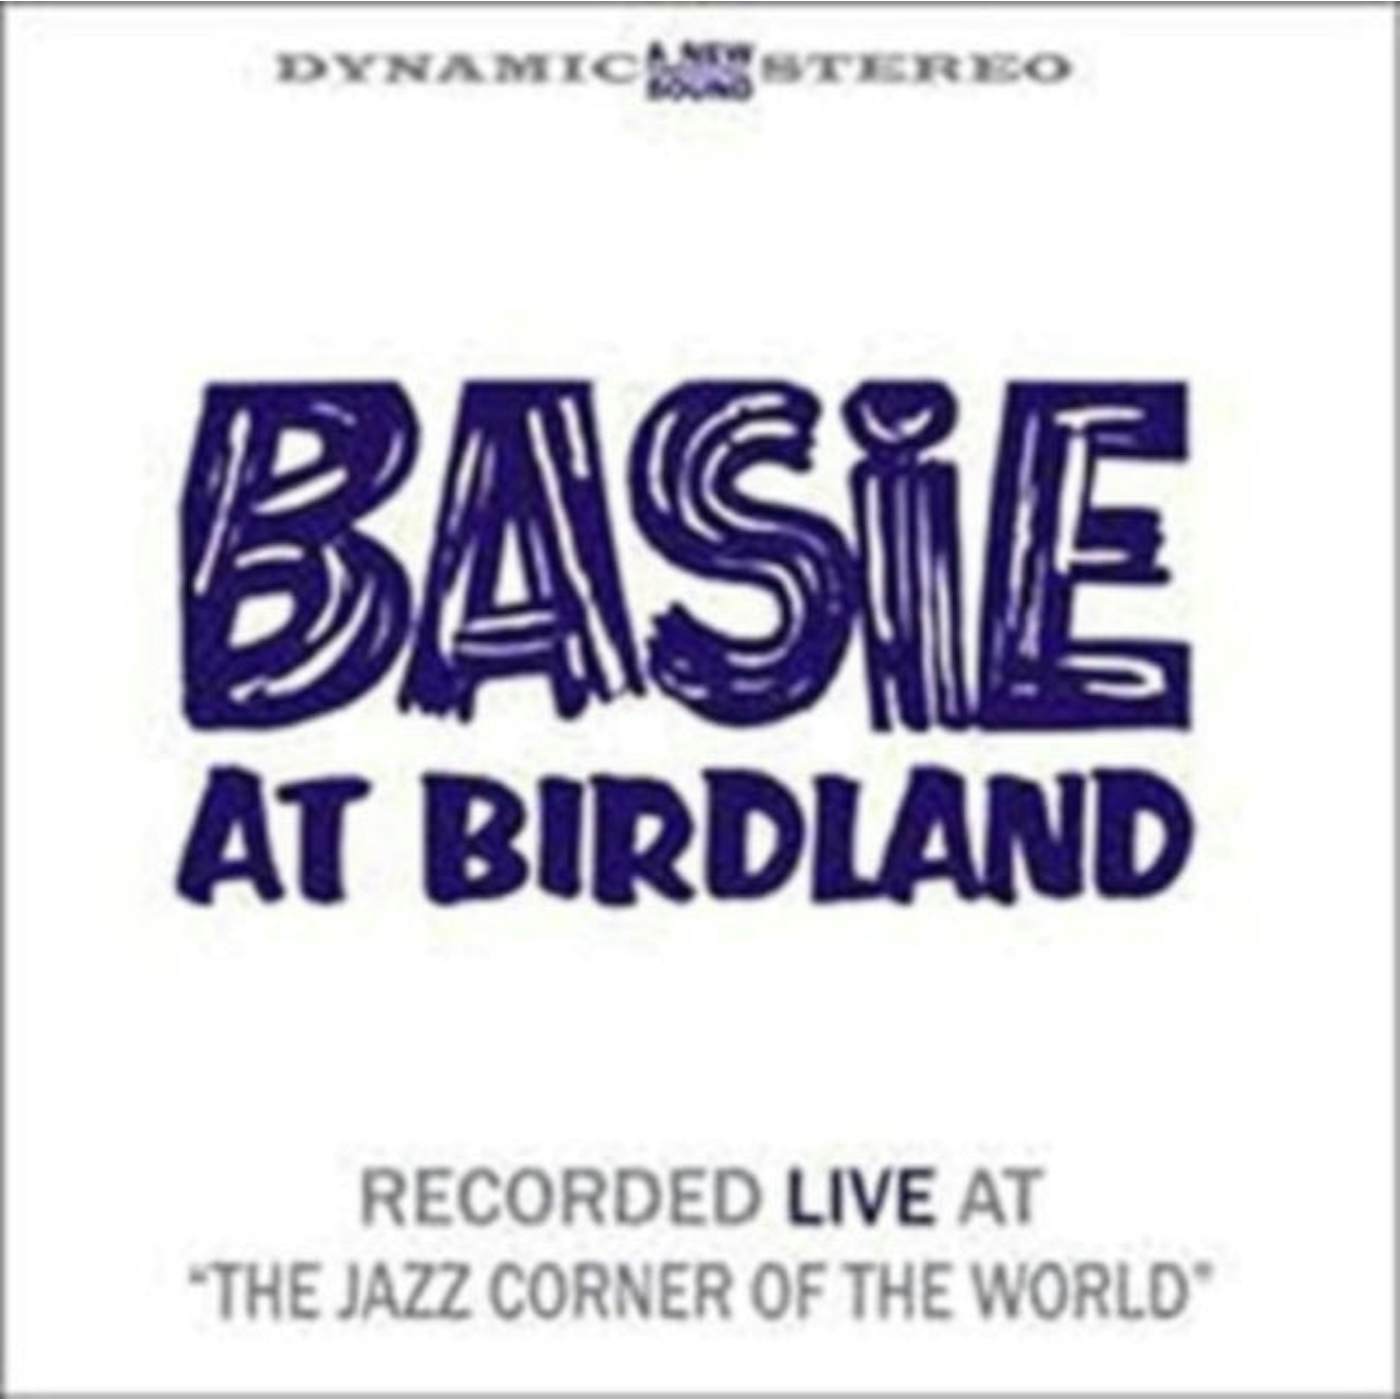 Count Basie LP - Basie At Birdland (Vinyl)